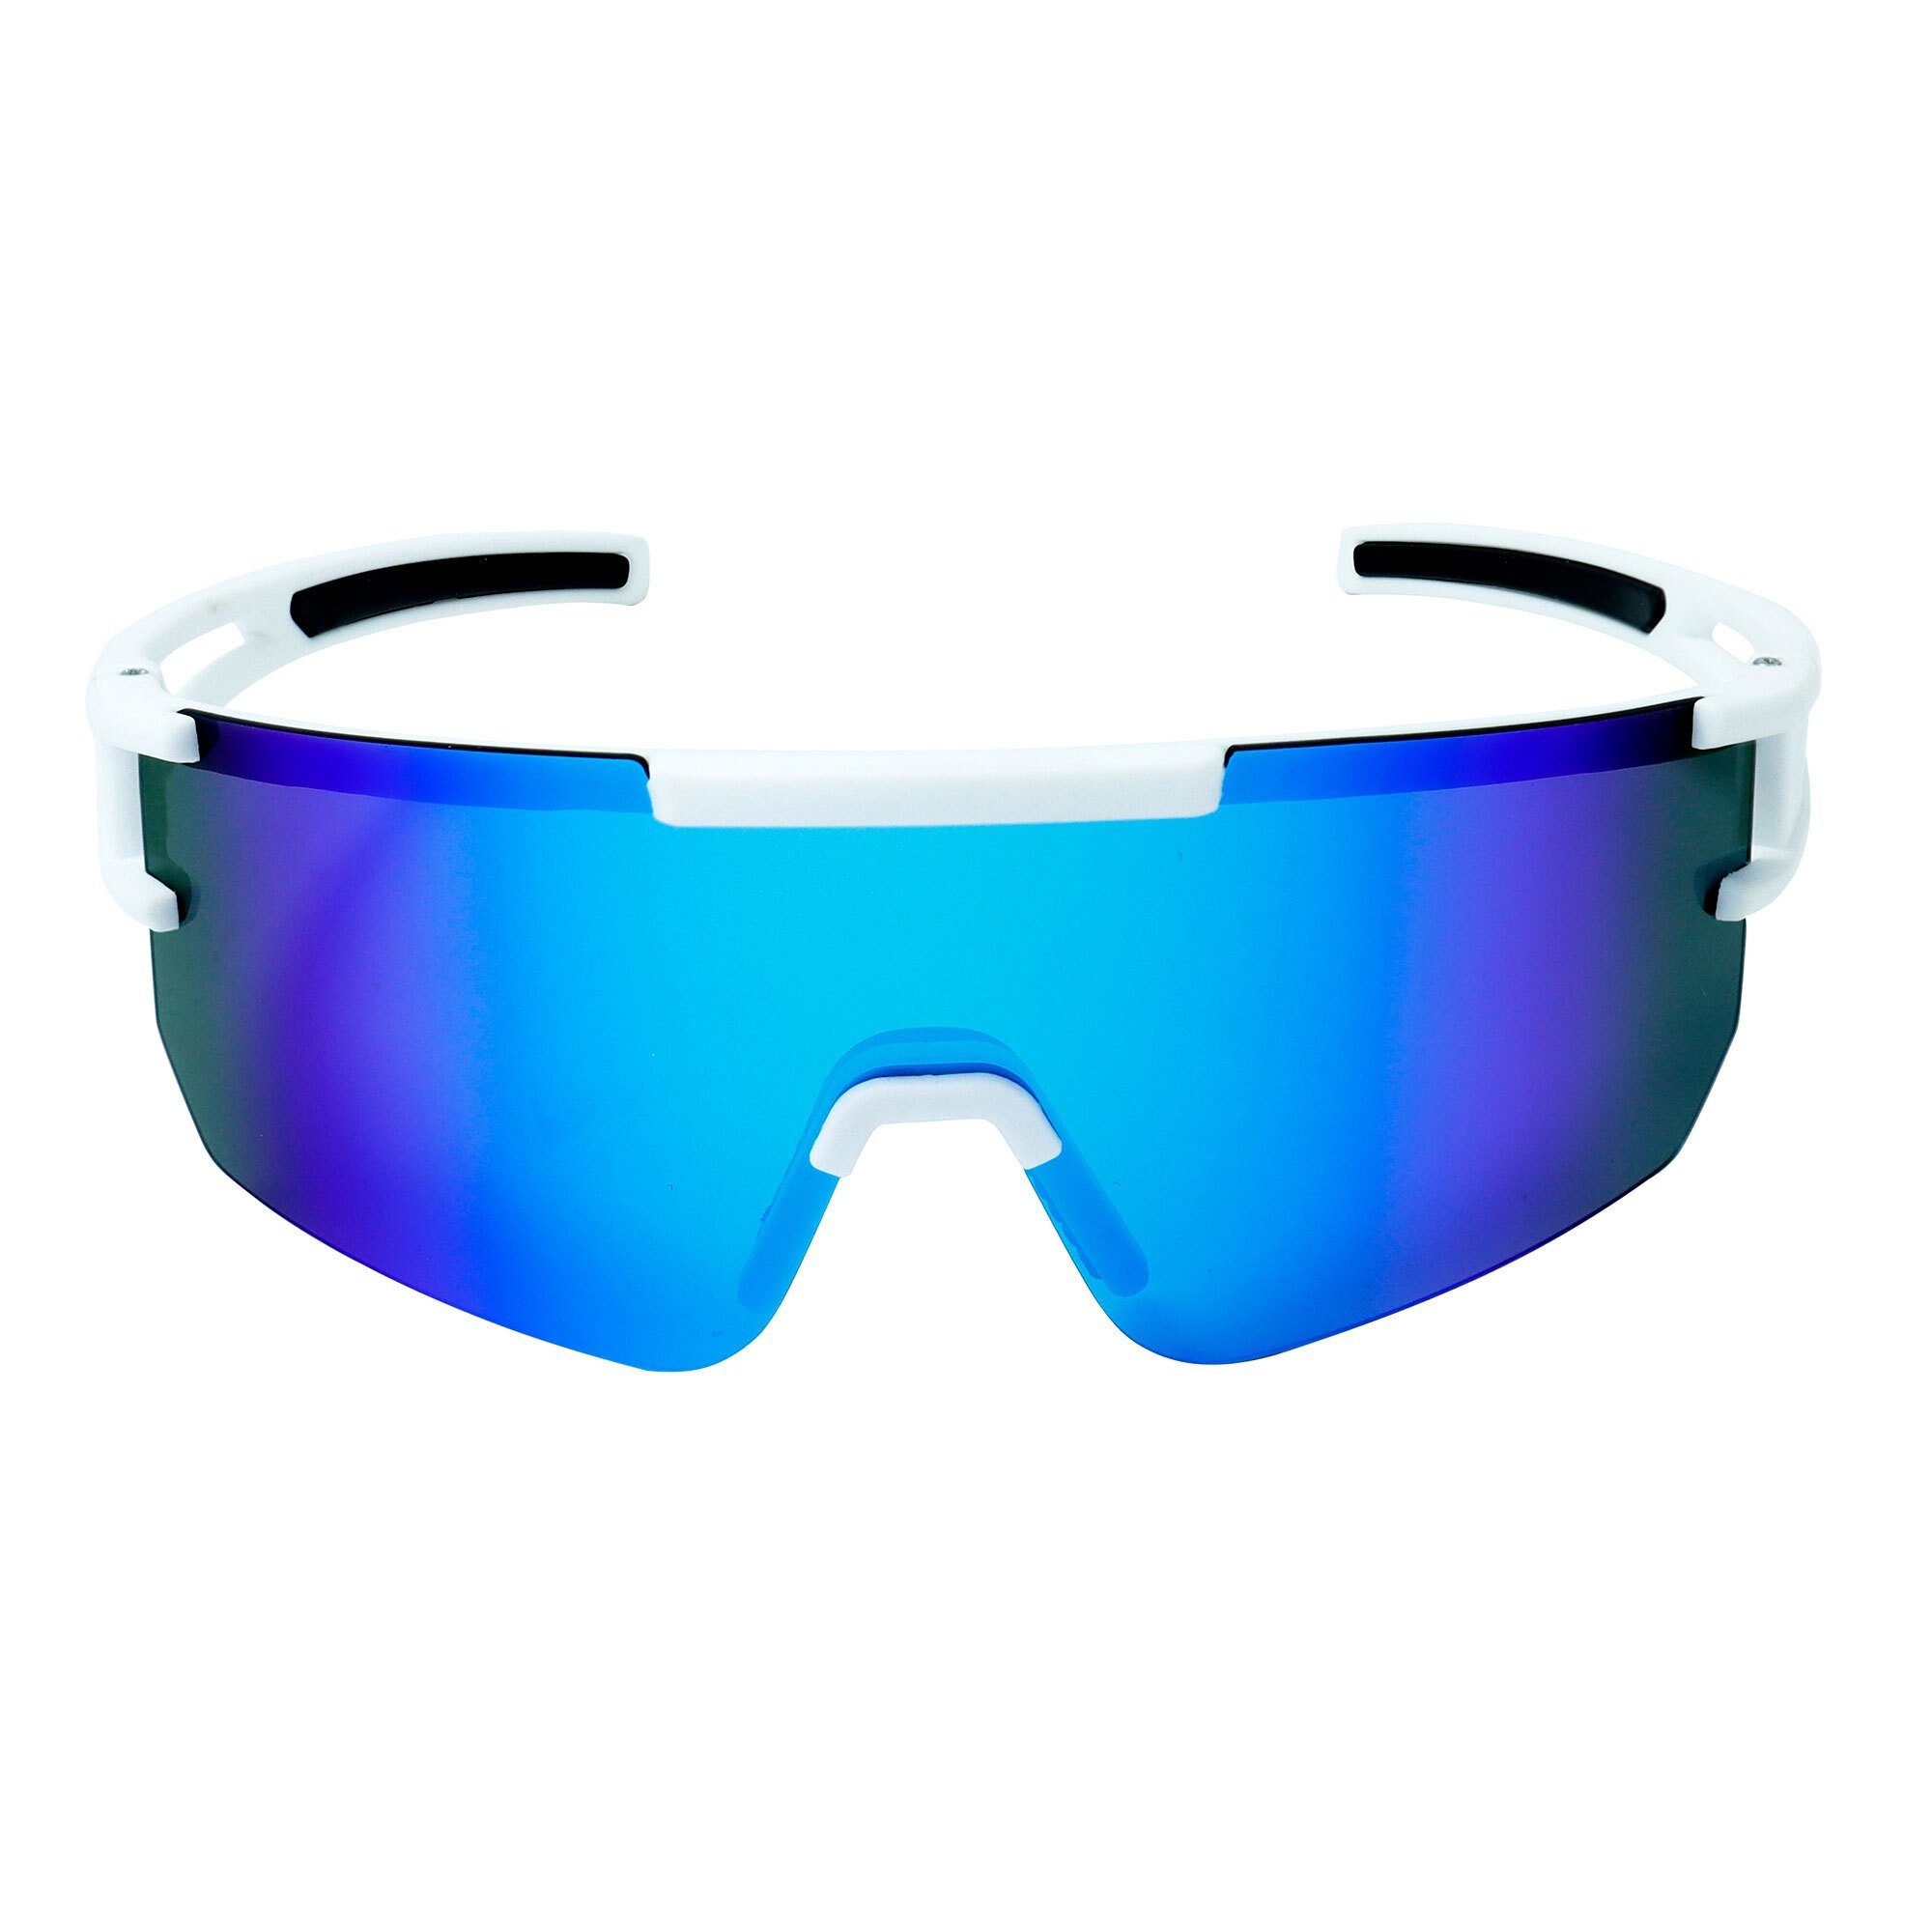 YEAZ Sportbrille SUNSPARK Schutz sport-sonnenbrille Guter optimierter bei Sicht white/blue, bright